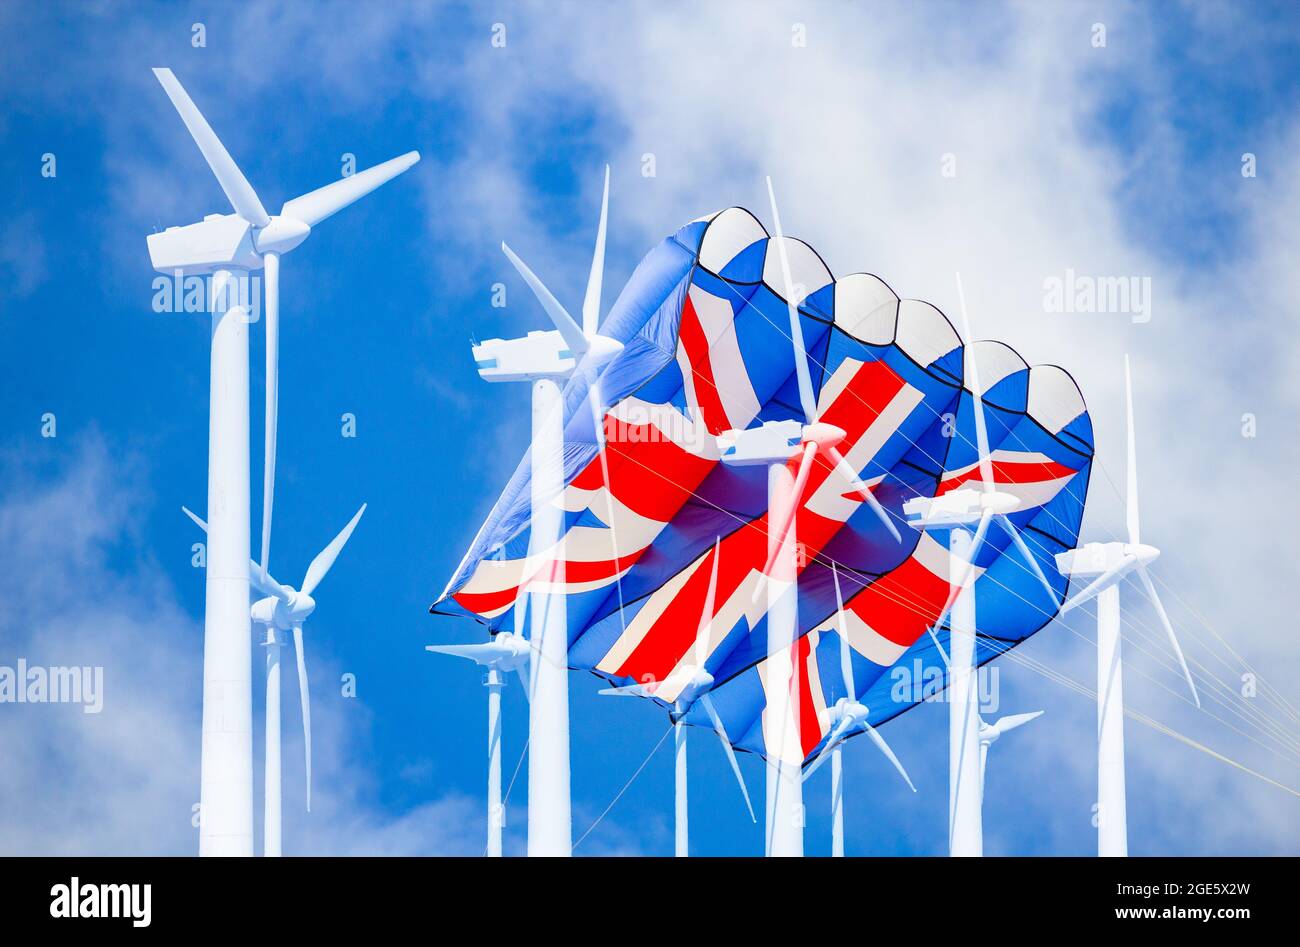 Gran Reino Unido bandera Jack cometa, cielo azul y turbinas eólicas. Energía limpia, energía eólica, energías renovables, cambio climático, calentamiento global Foto de stock